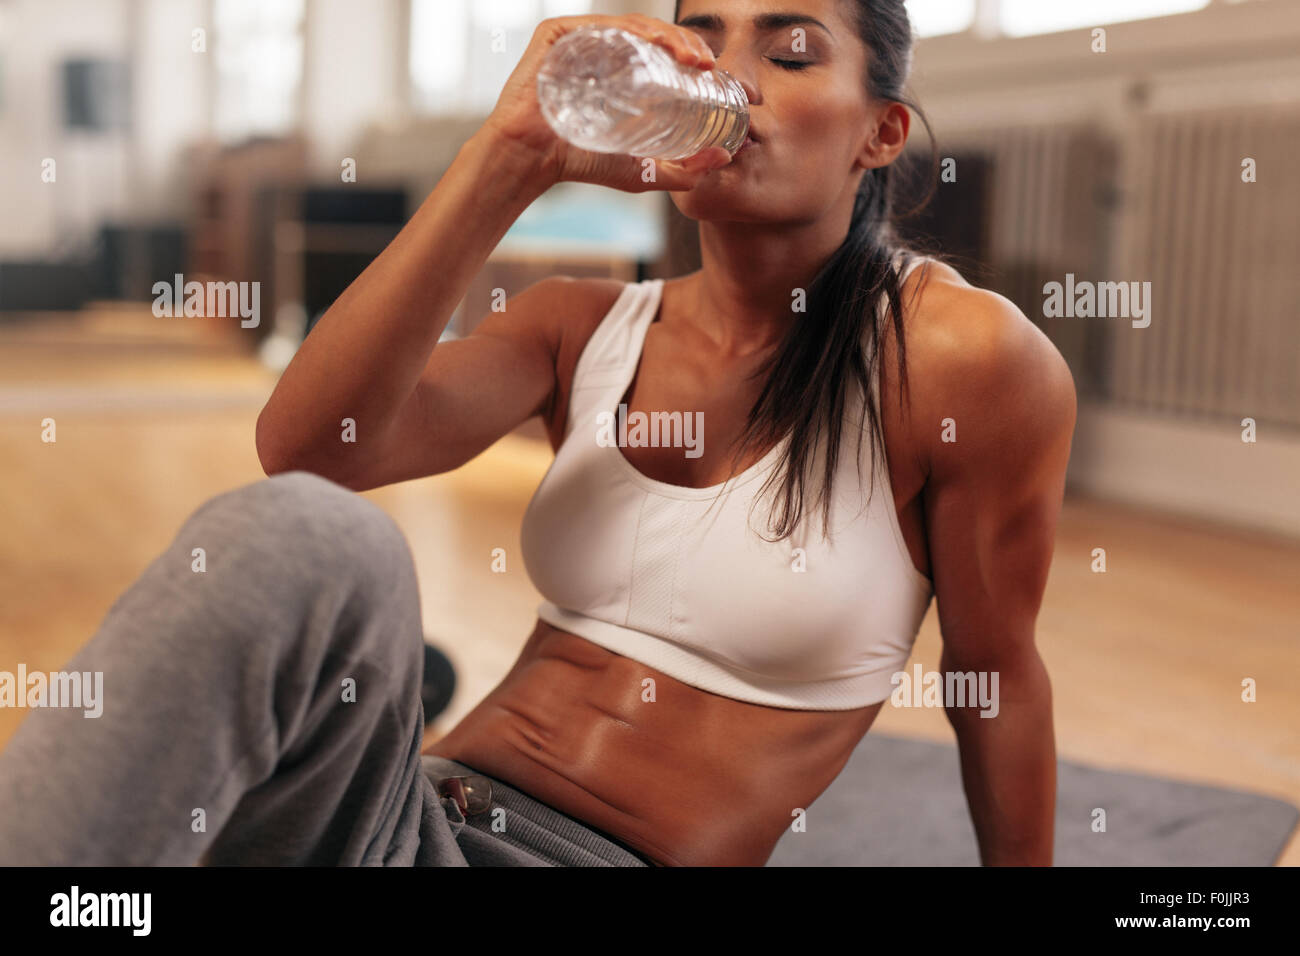 Mujer Fitness beber agua de botella. Las hembras jóvenes muscular en el gimnasio, tomar un descanso de entrenamiento. Foto de stock